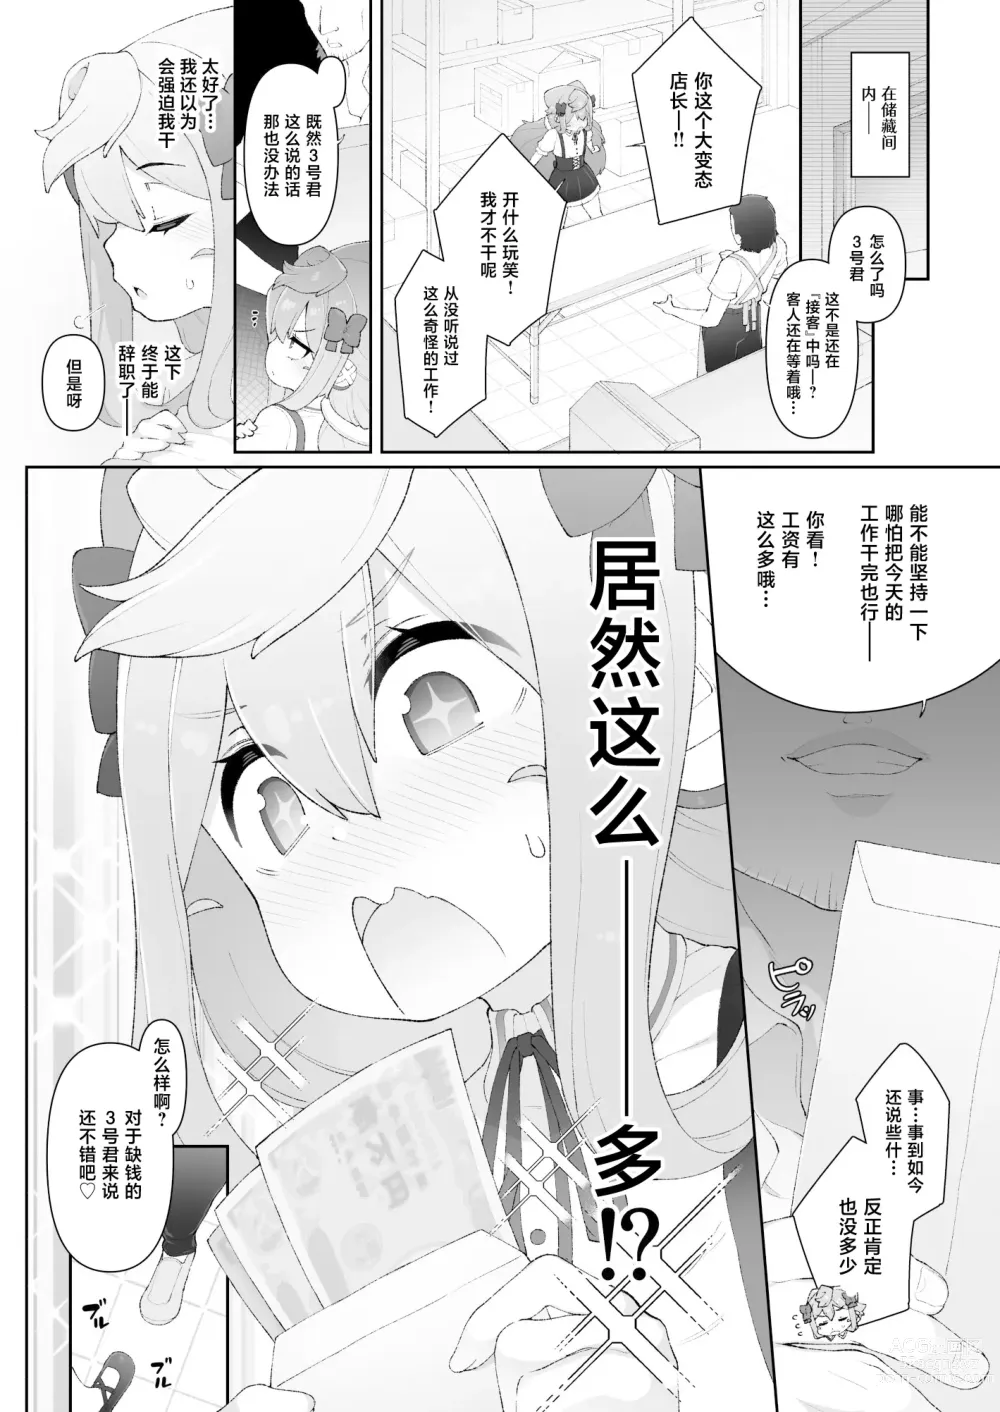 Page 9 of doujinshi HakaDol 3-gou-kun Tokusei Himitsu no Ura Menu!!